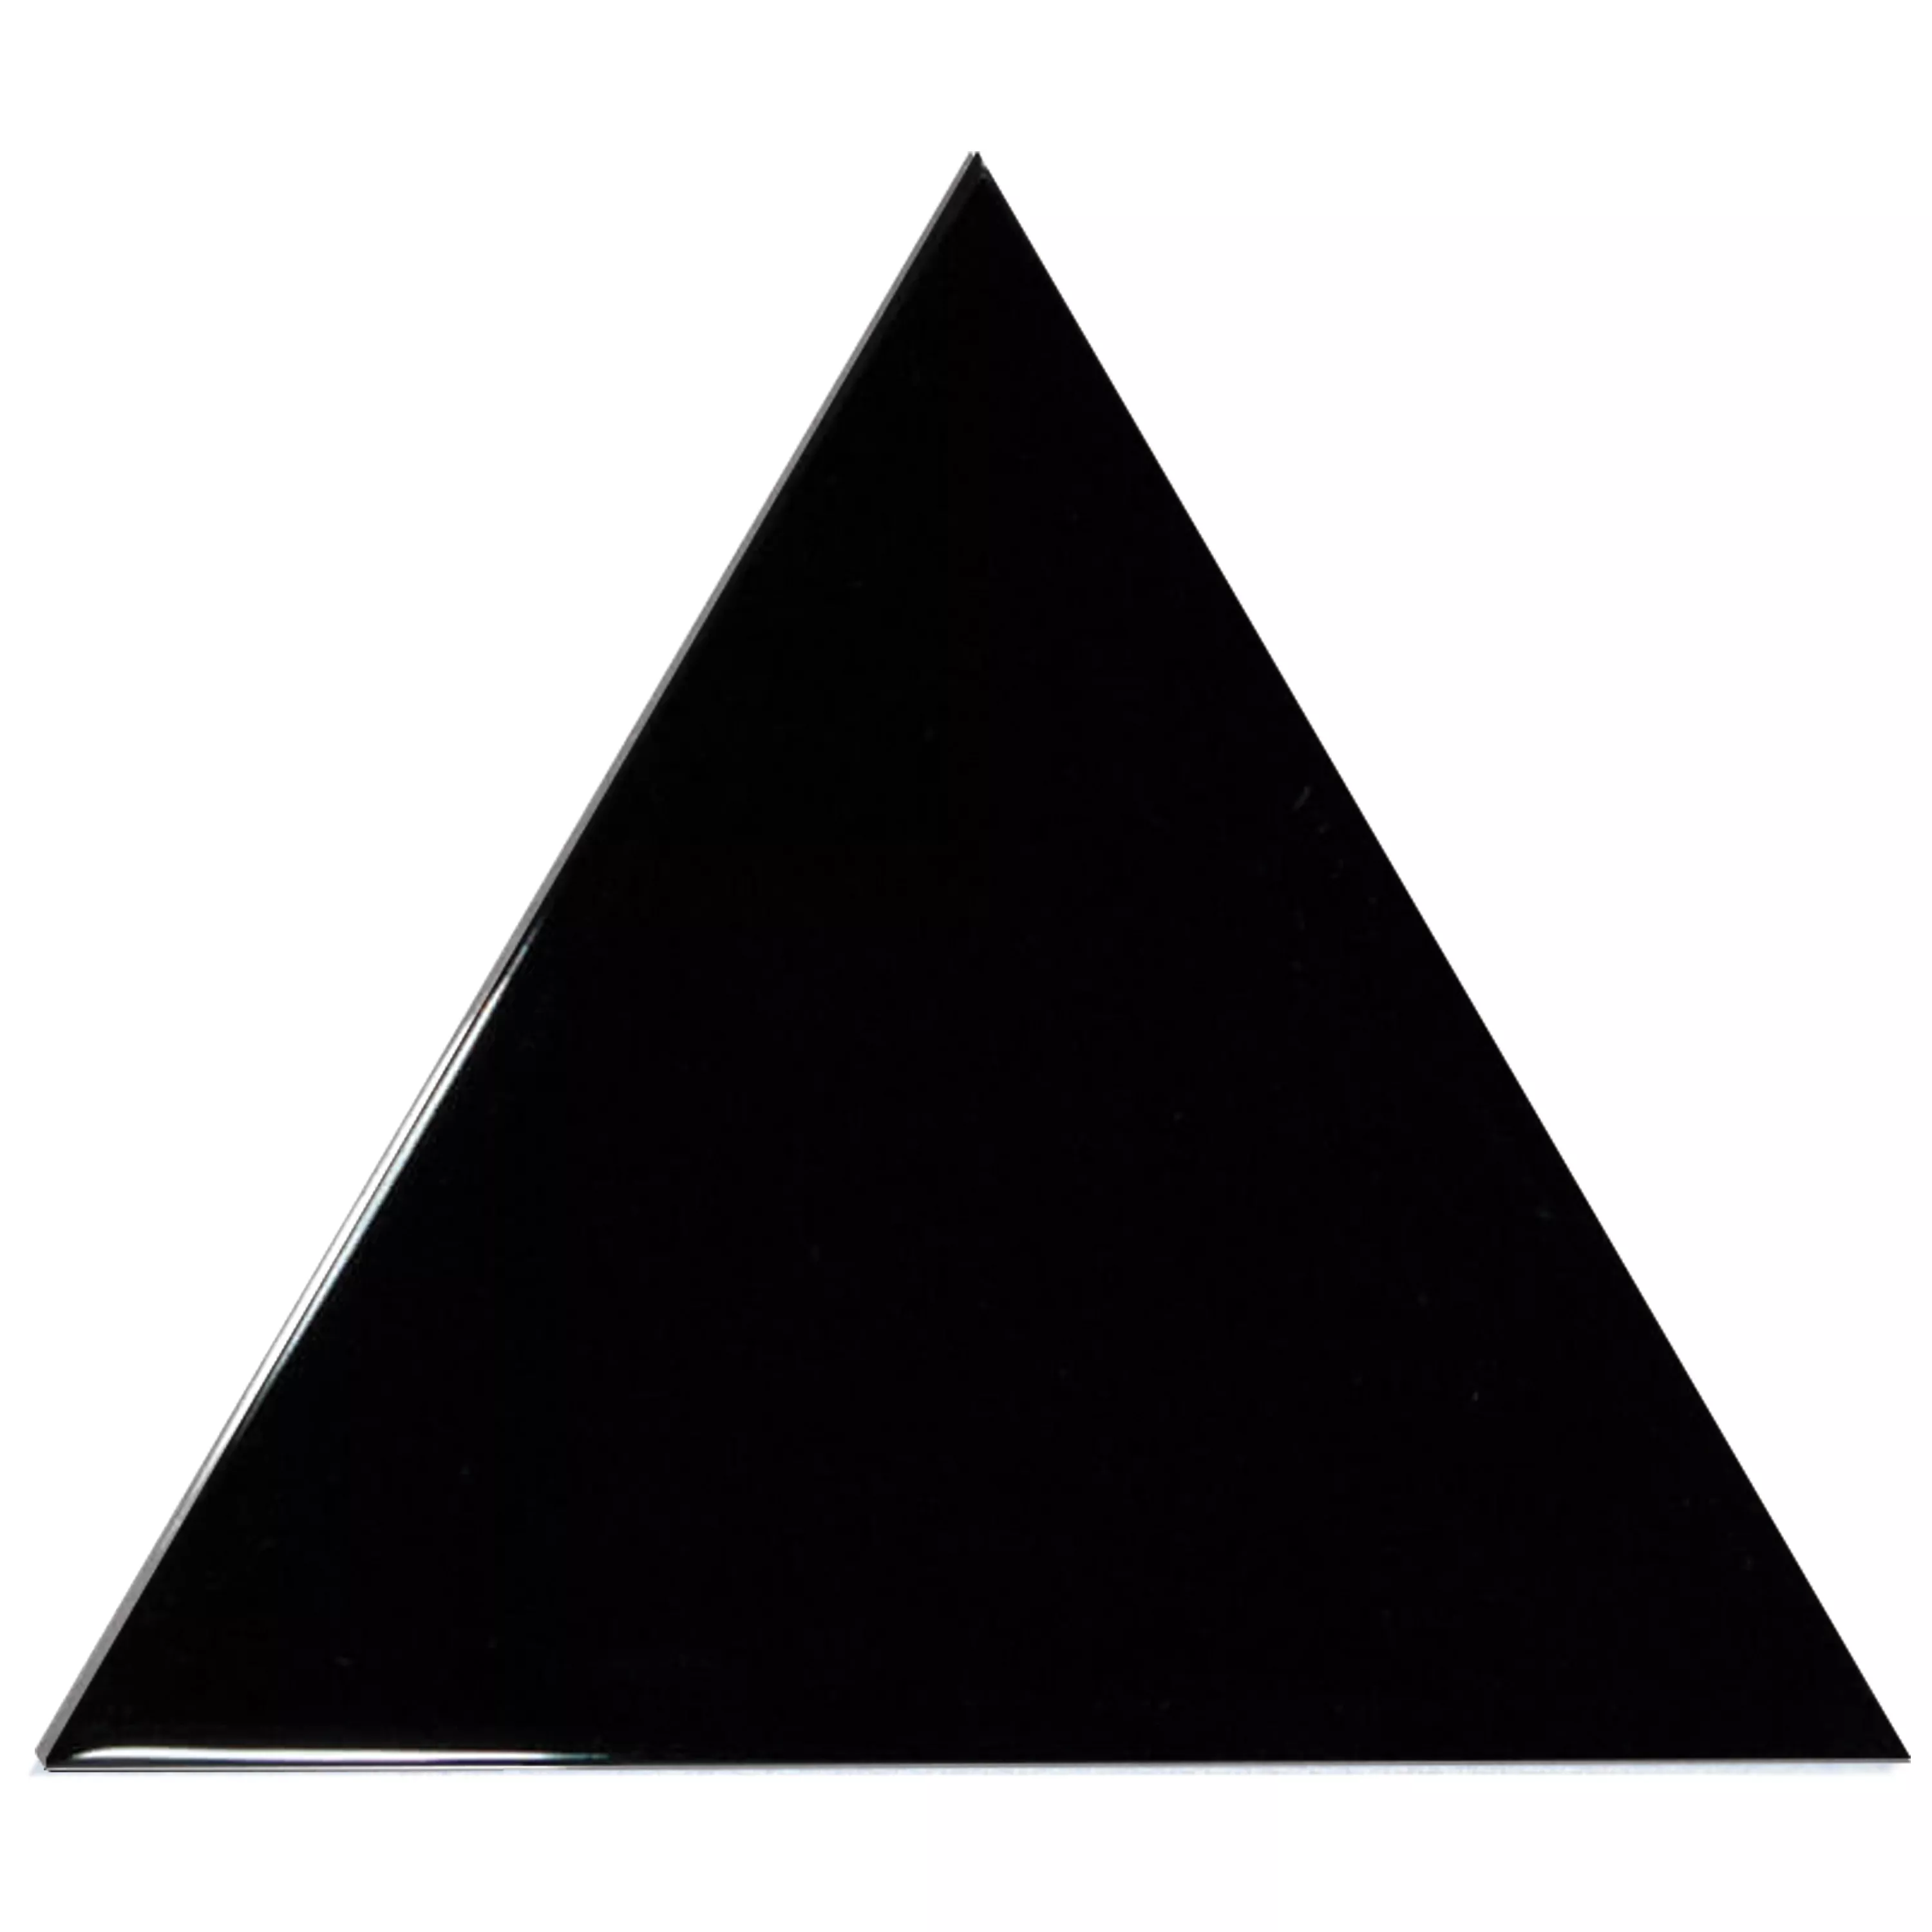 Sample Wall Tiles Britannia Triangle 10,8x12,4cm Black